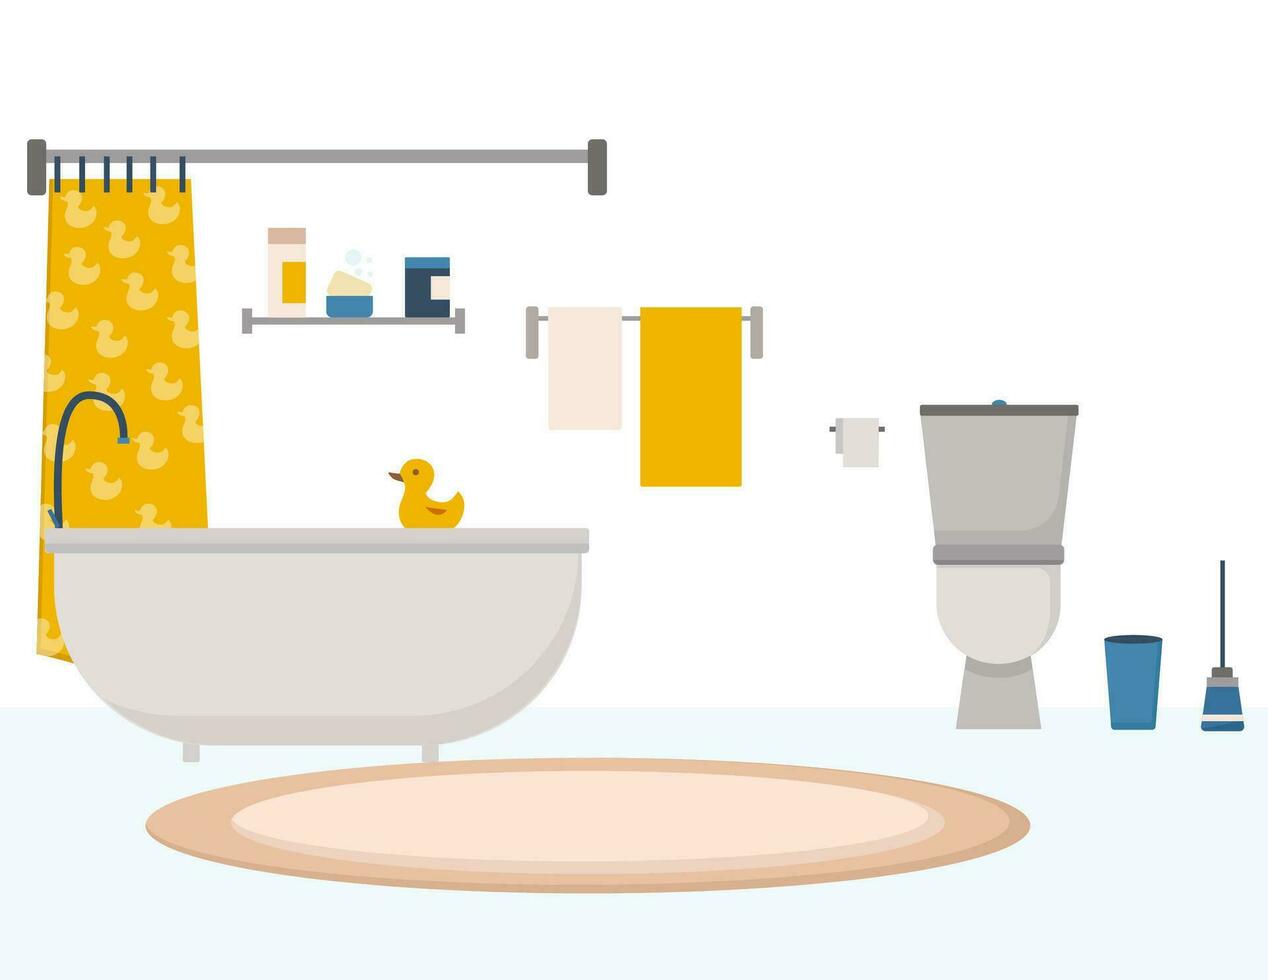 knus badkamer interieur met meubilair zo net zo badkuip, spiegel, nachtkastje tafel, toilet schaal, handdoeken in modern stijl in vlak vector illustratie